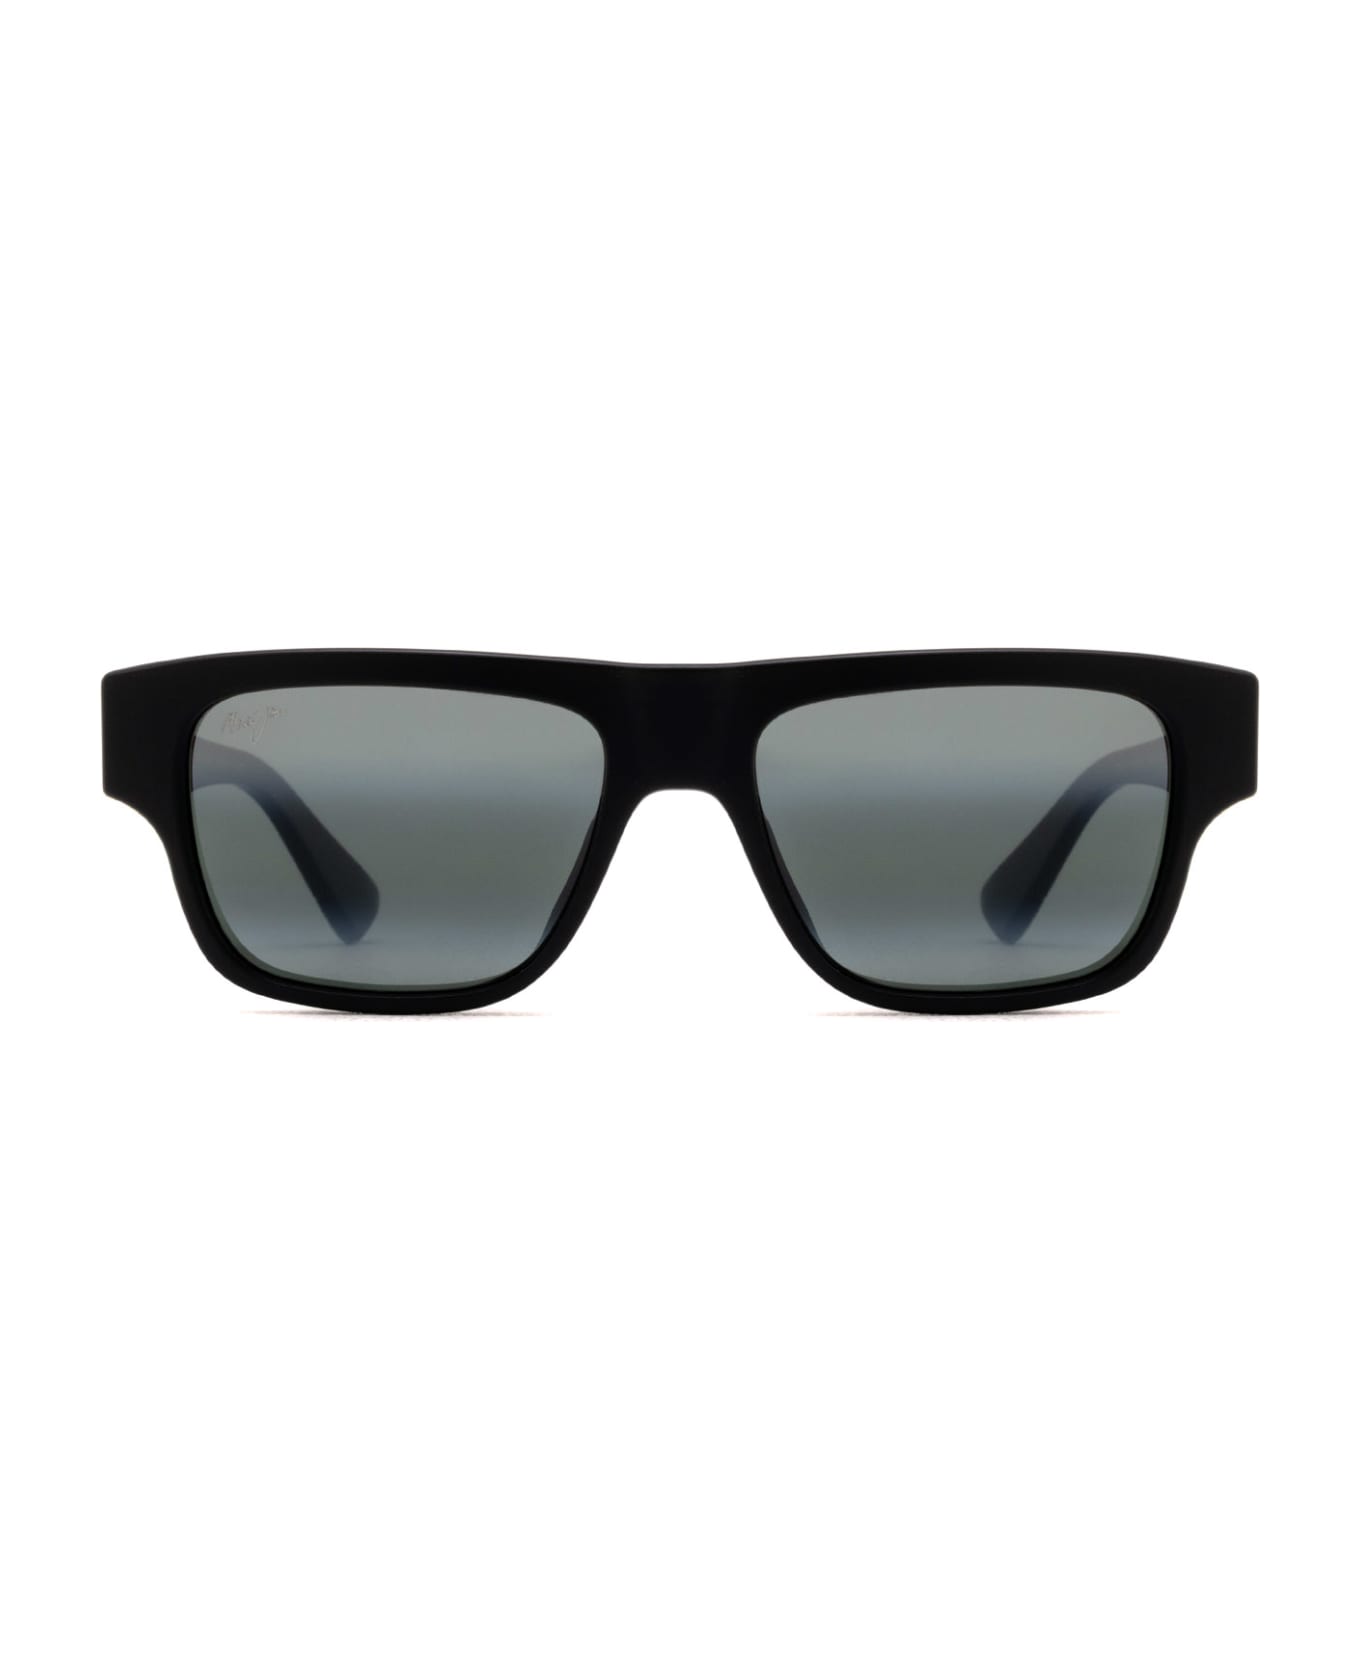 Maui Jim Mj638 Matte Black Sunglasses - Matte Black